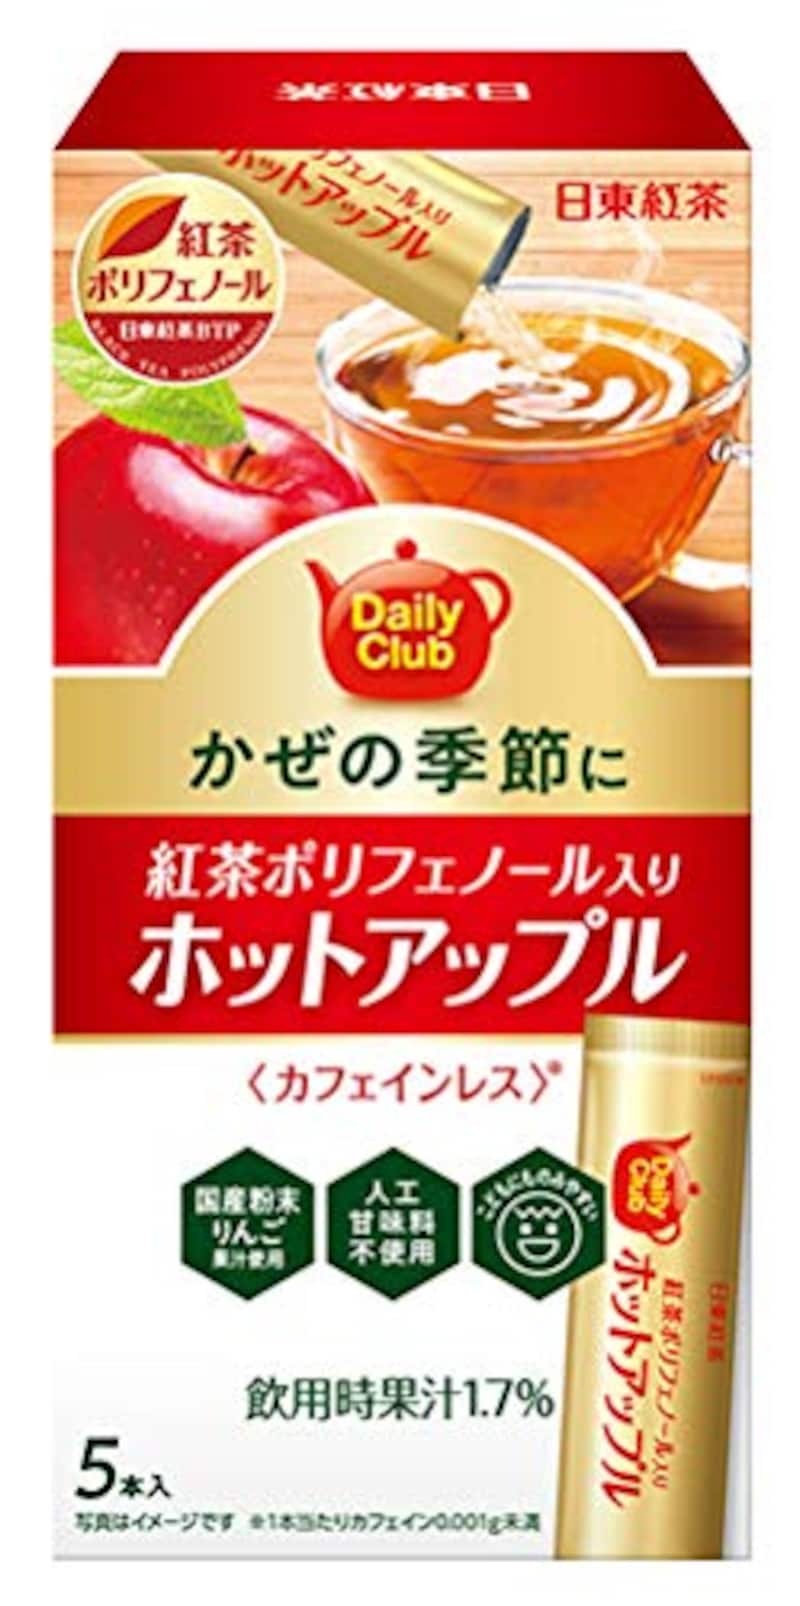 日東紅茶,デイリークラブ紅茶ポリフェノールホットアップル